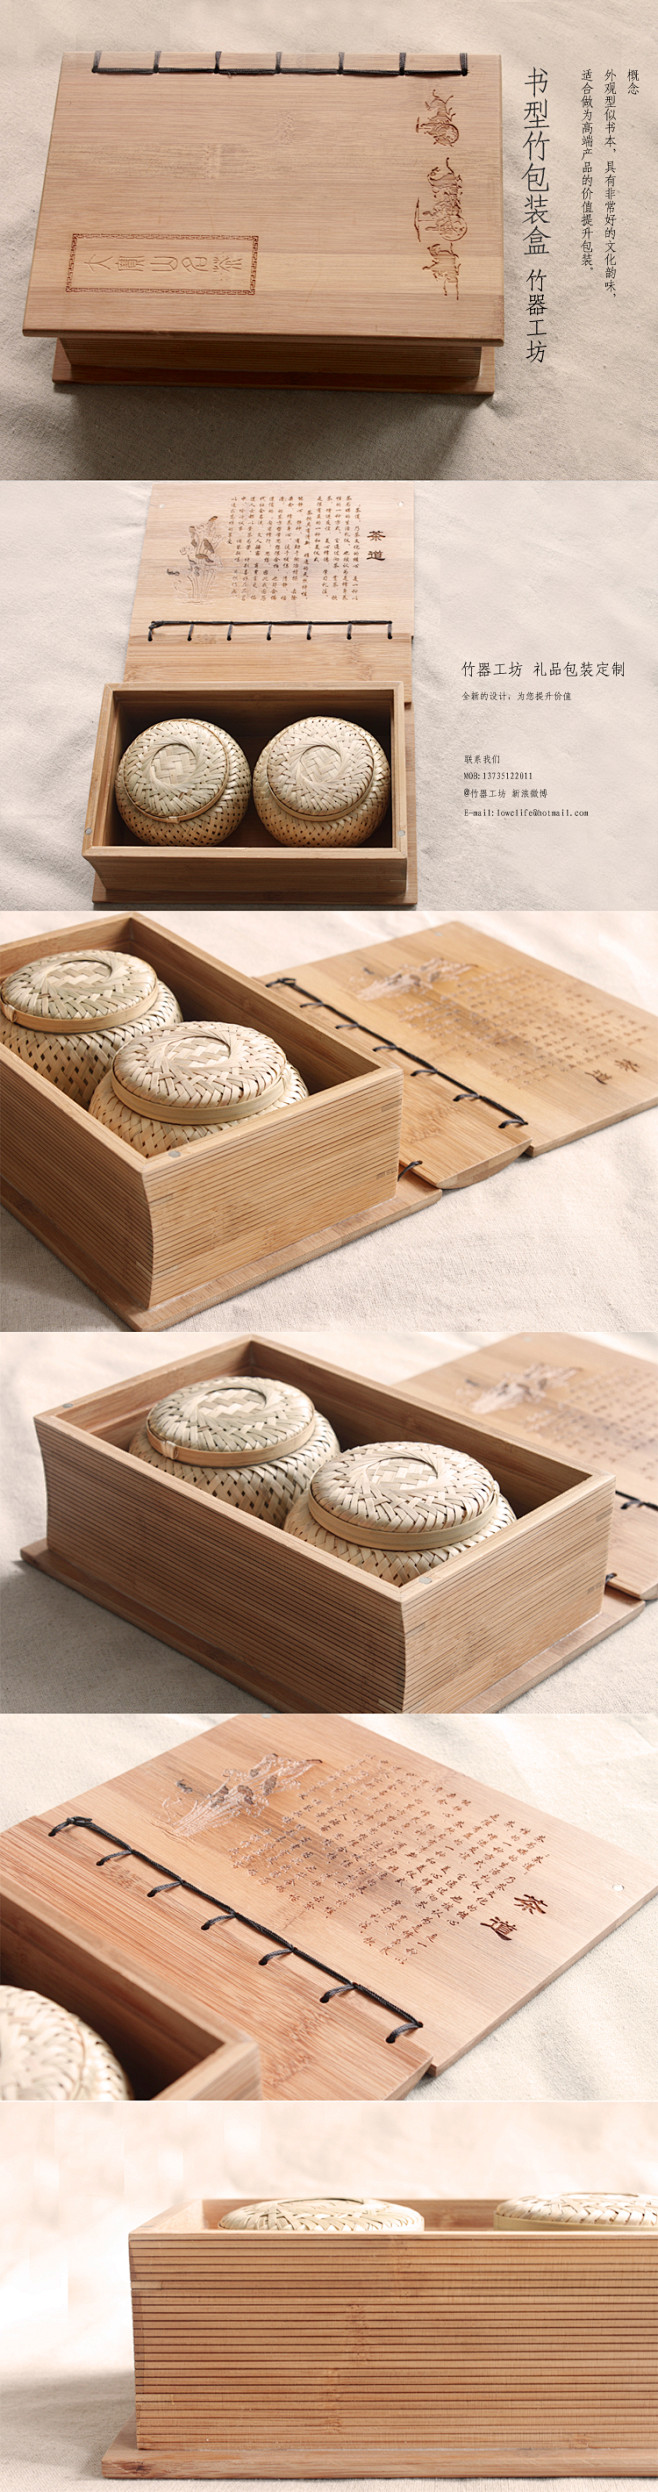 竹盒子 木盒 包装盒 